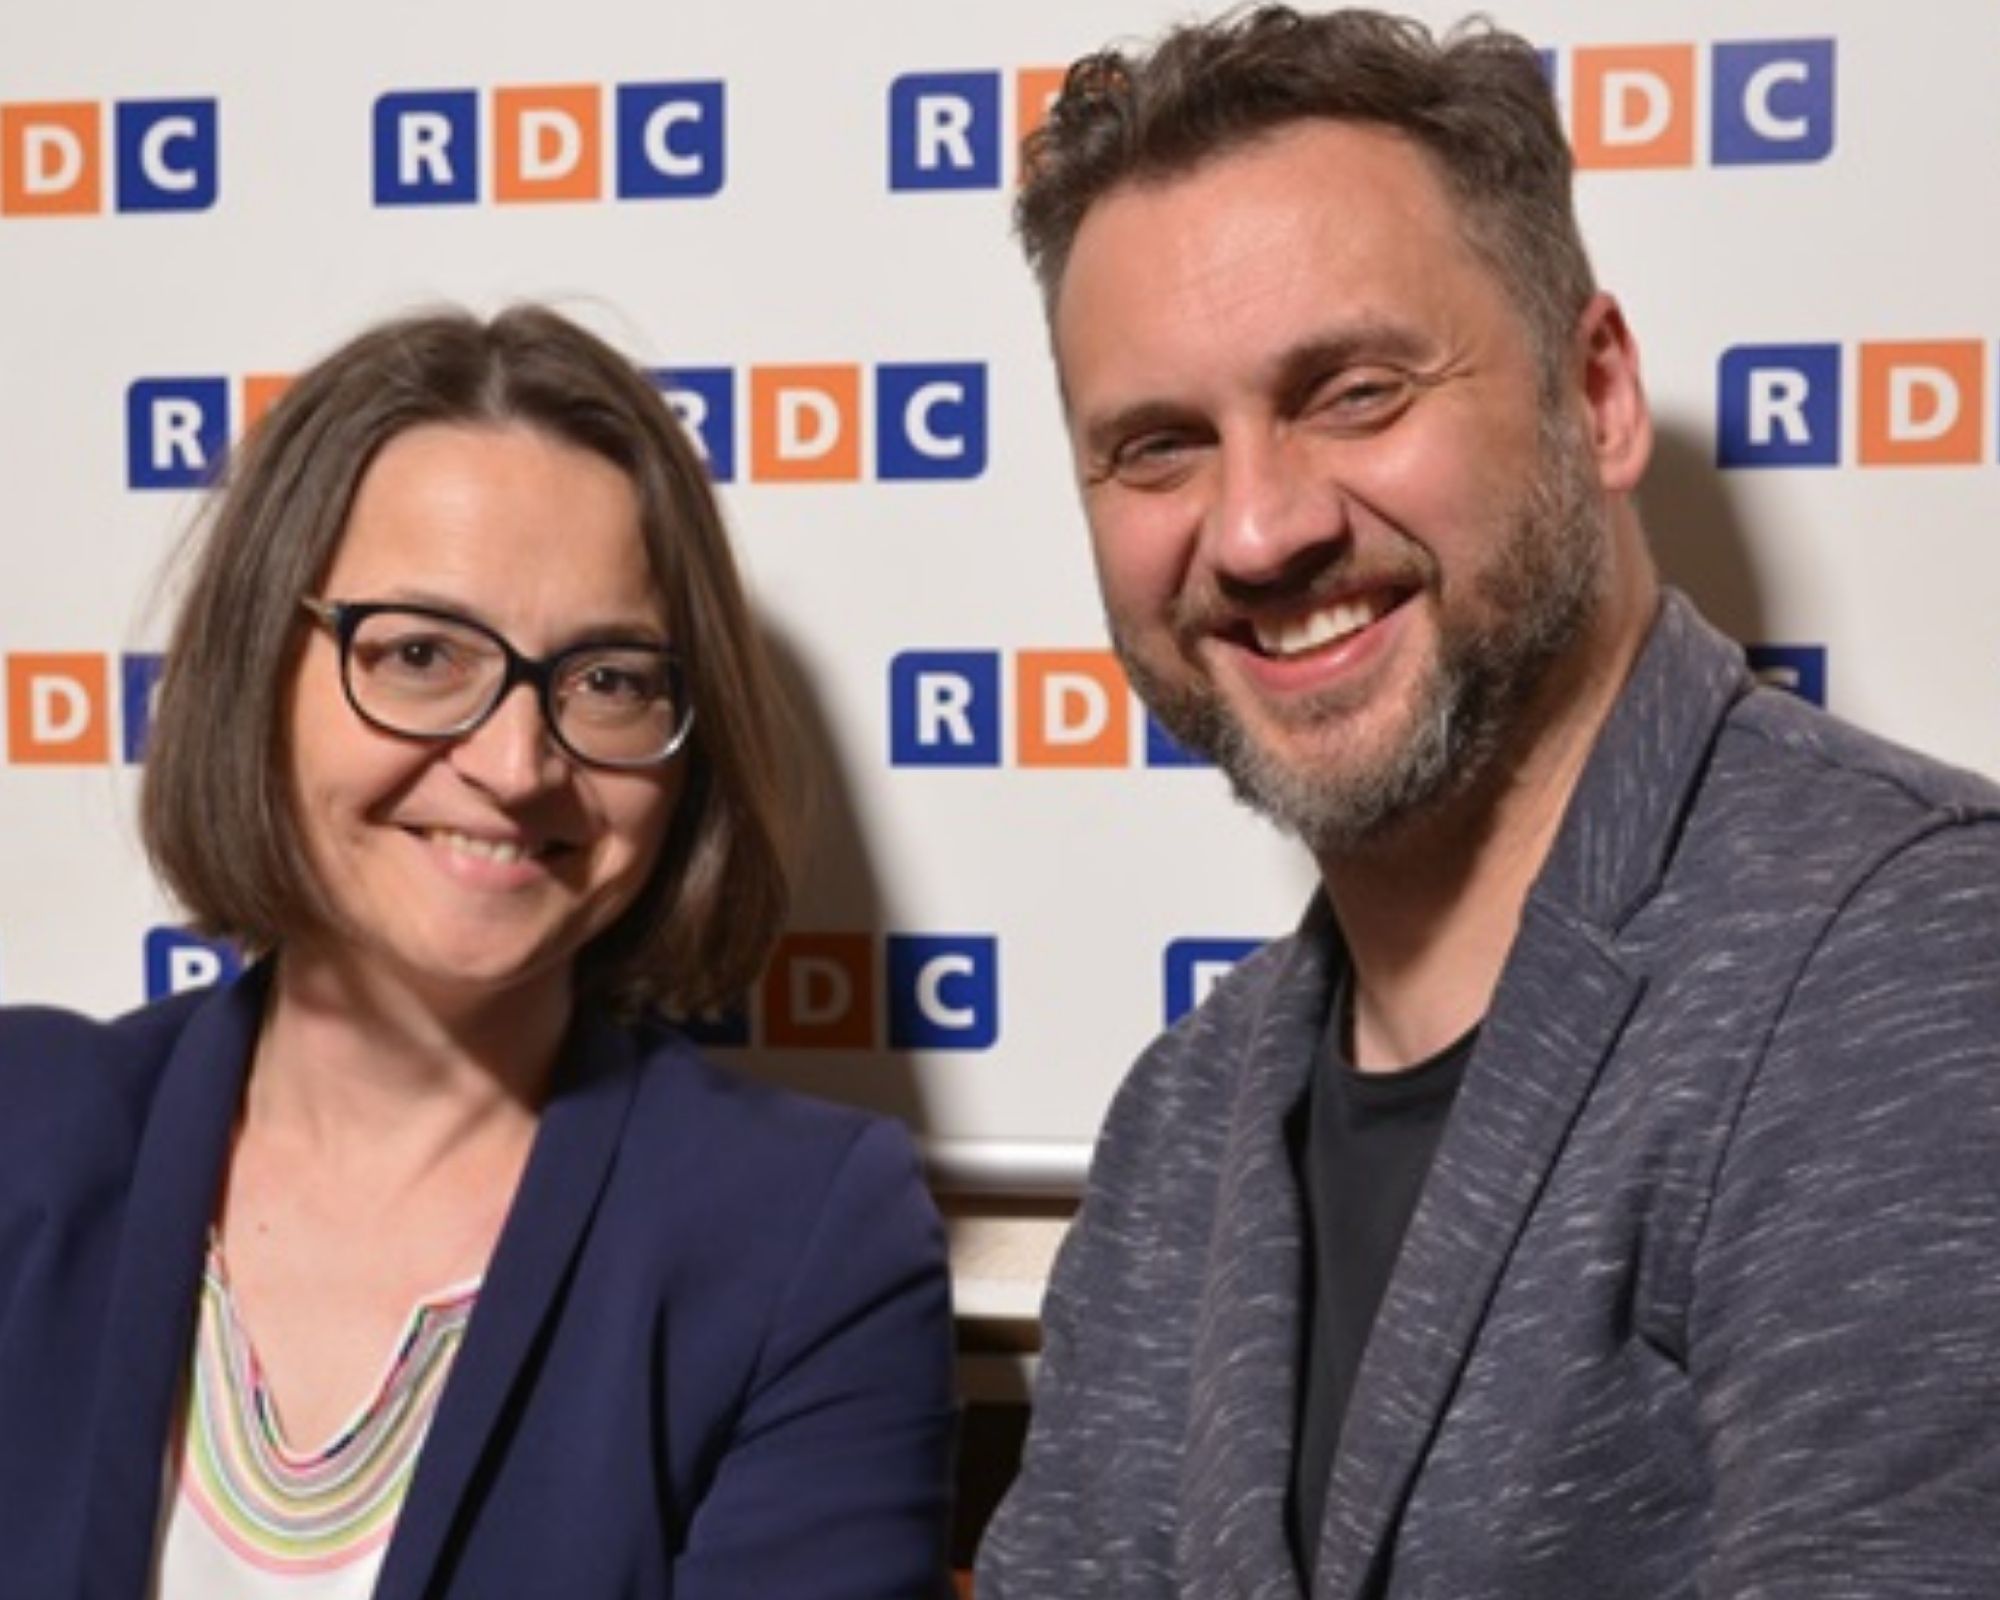 Radio RDC dr Lidia Zabłocka-Żytka i Marcin Styczeń